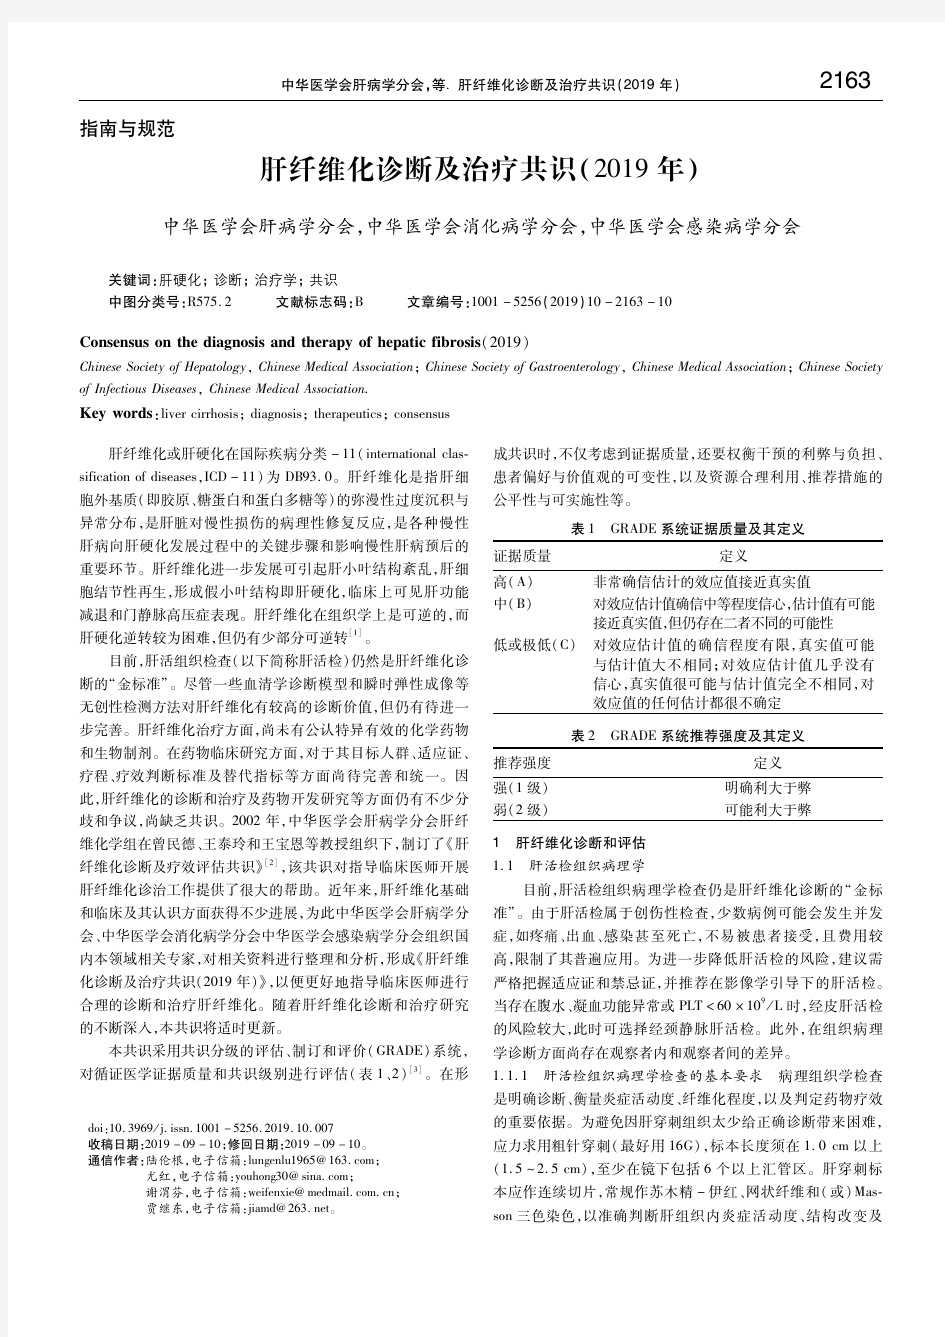 肝纤维化诊断及治疗共识(2019年) 中华医学会肝病学分会